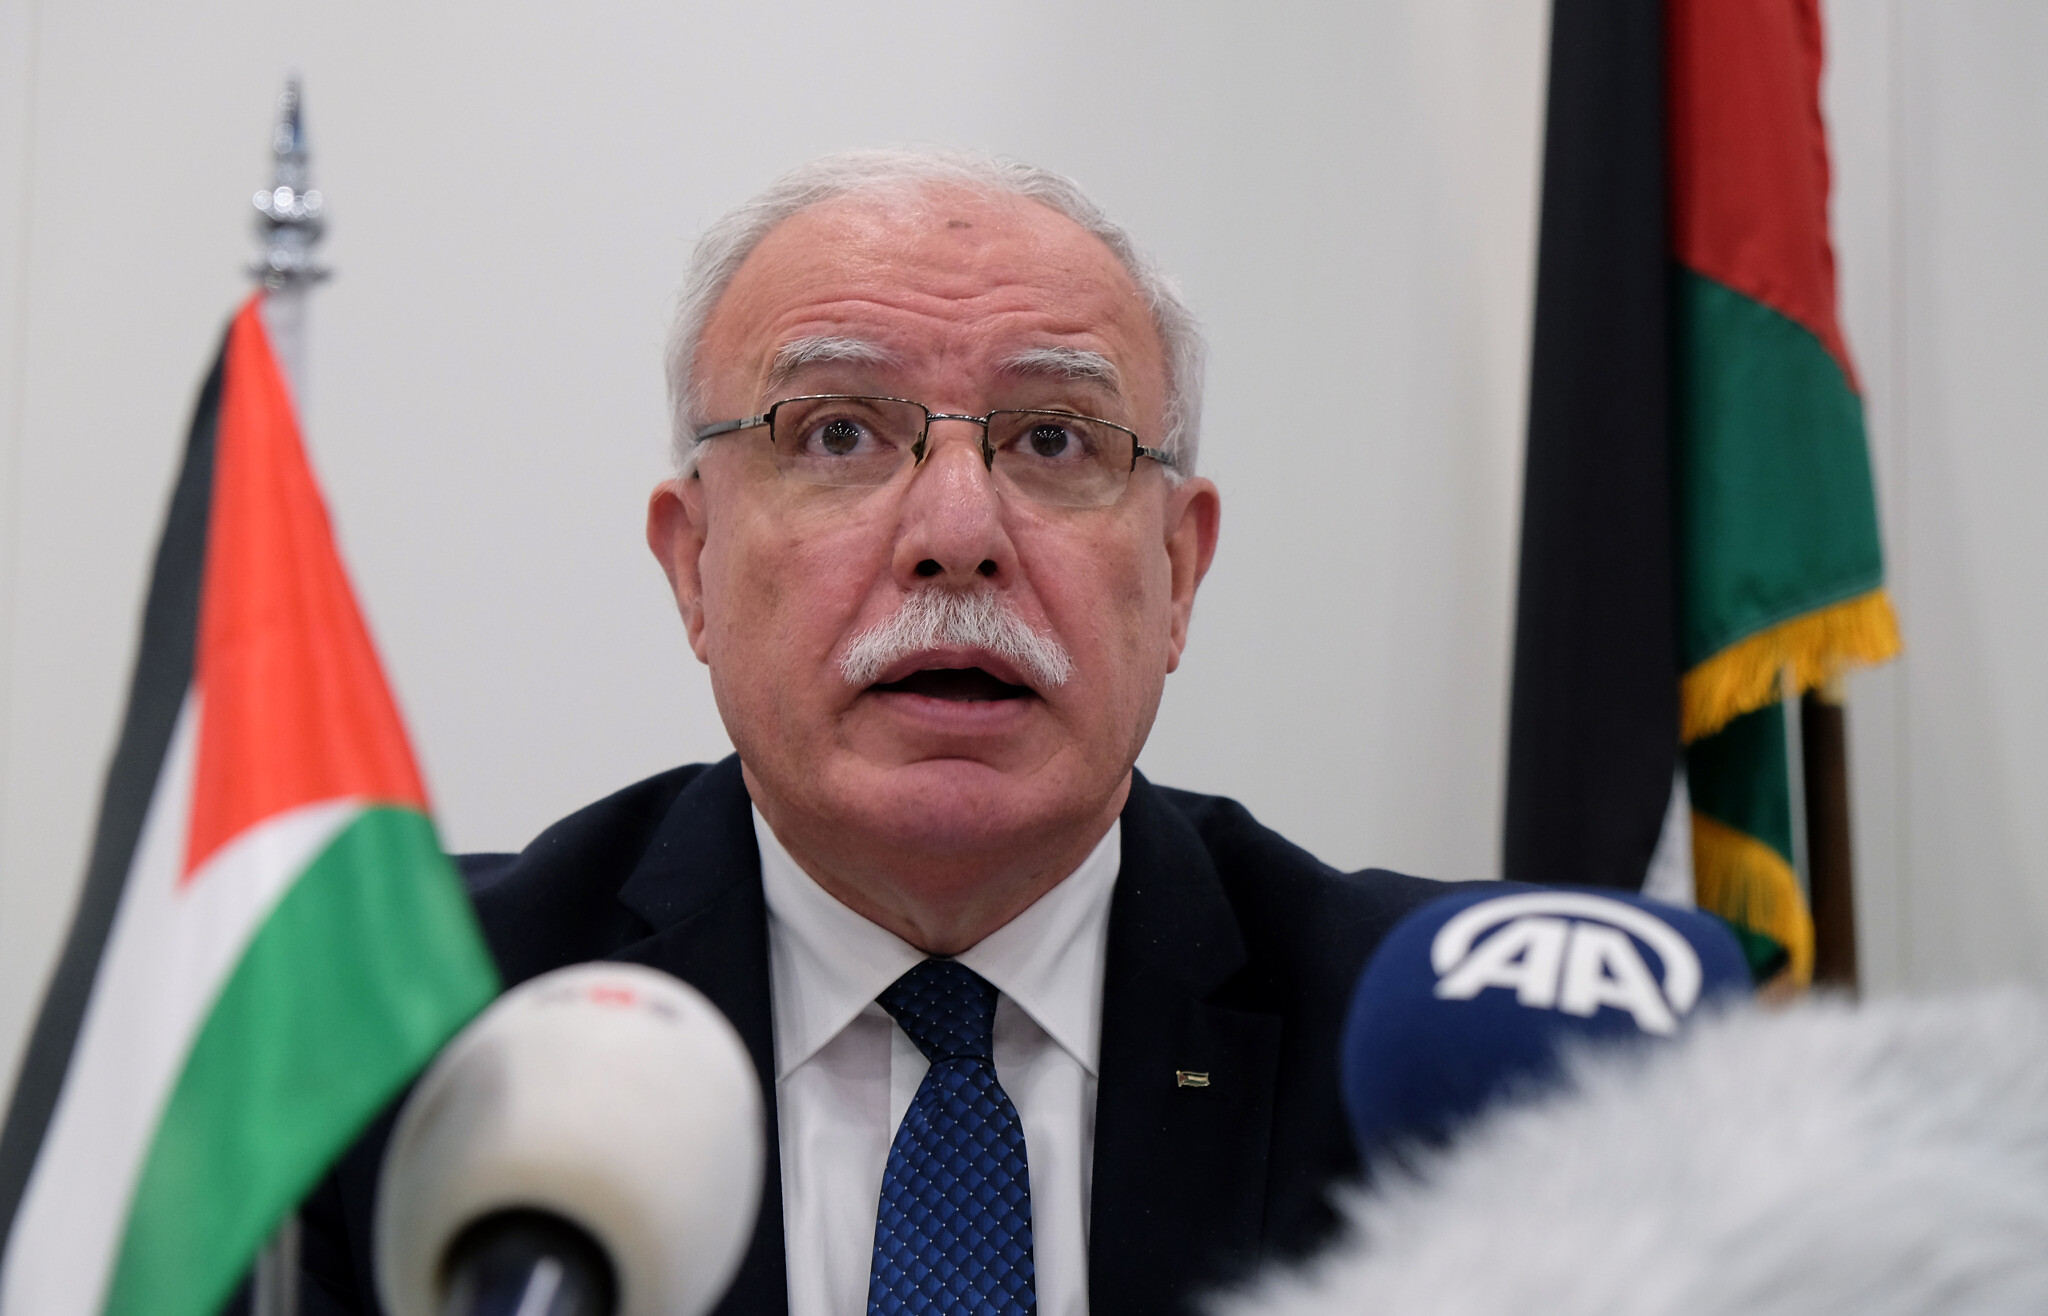 Palesztin külügyminiszter: Készüljetek fel a kétállami megoldás temetésére!